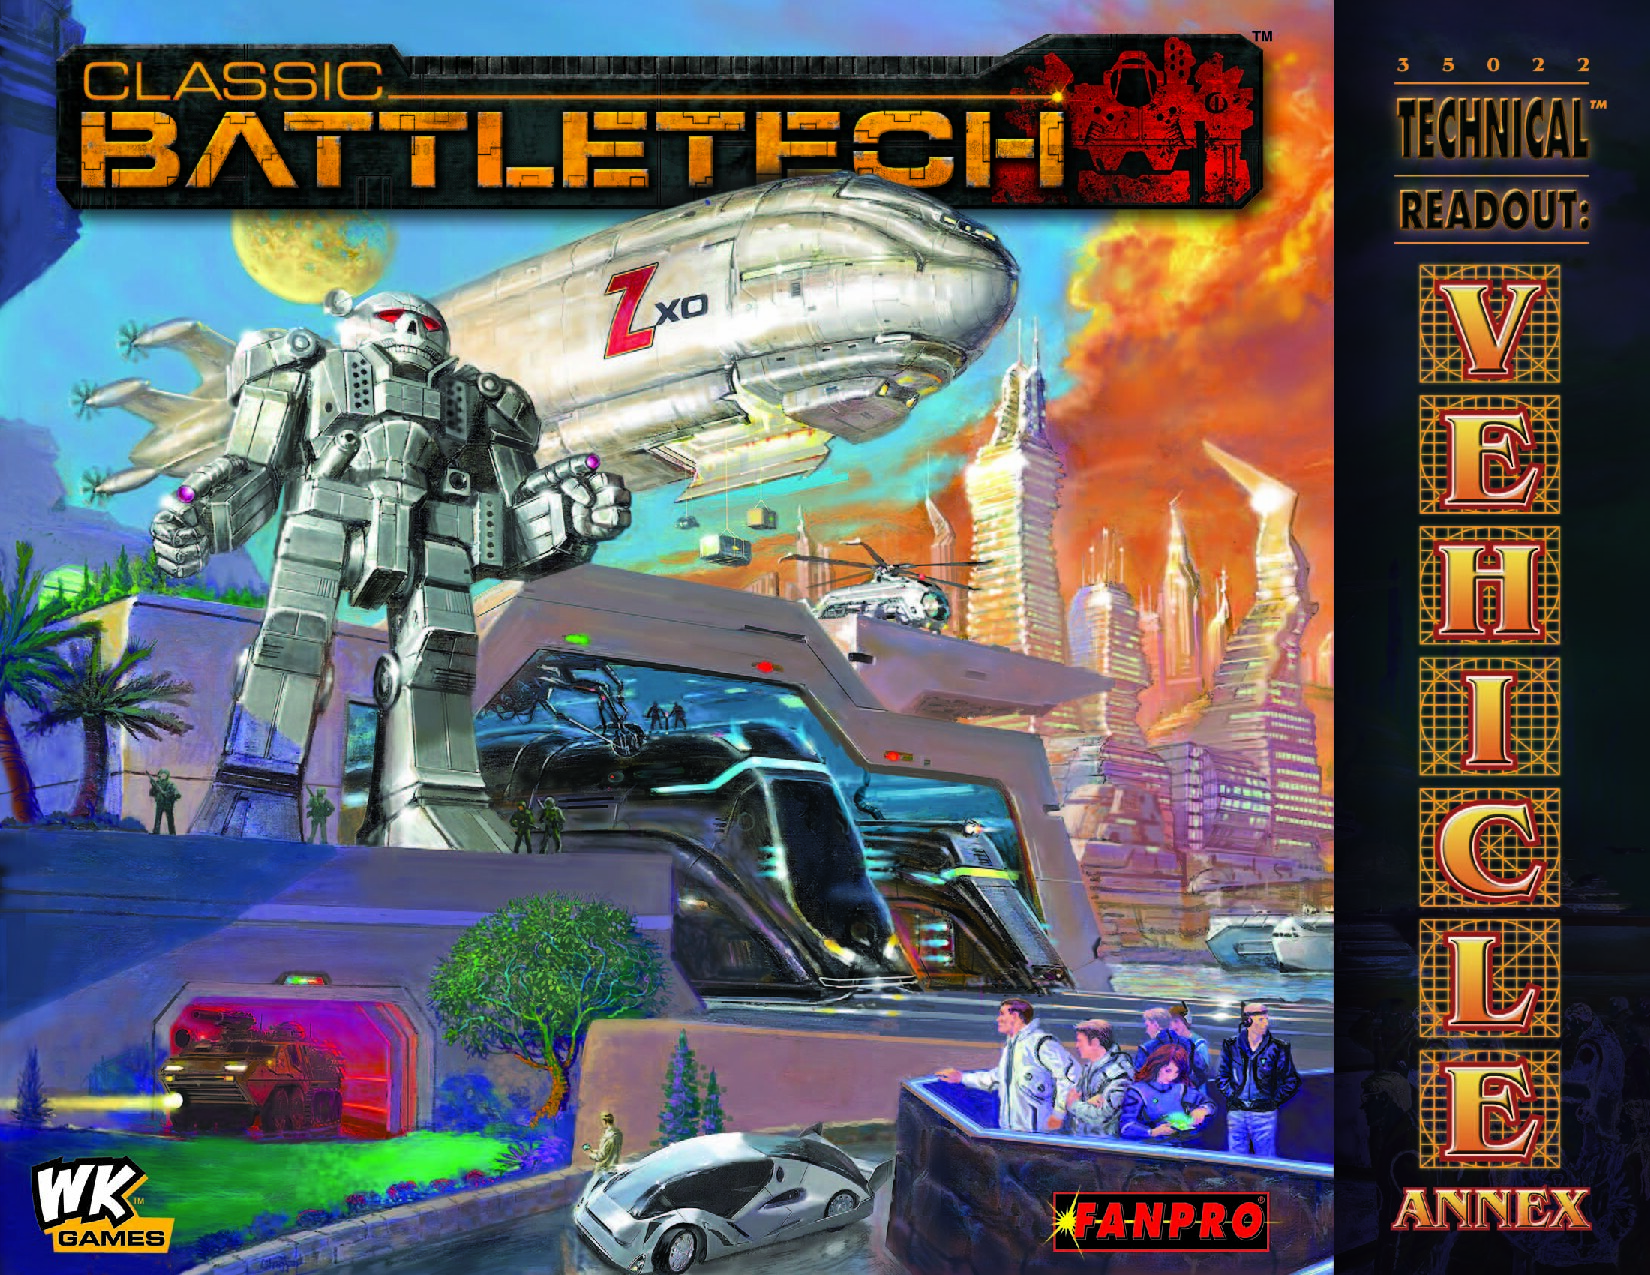 Classic Battletech Technical Readout Vehicle Annex